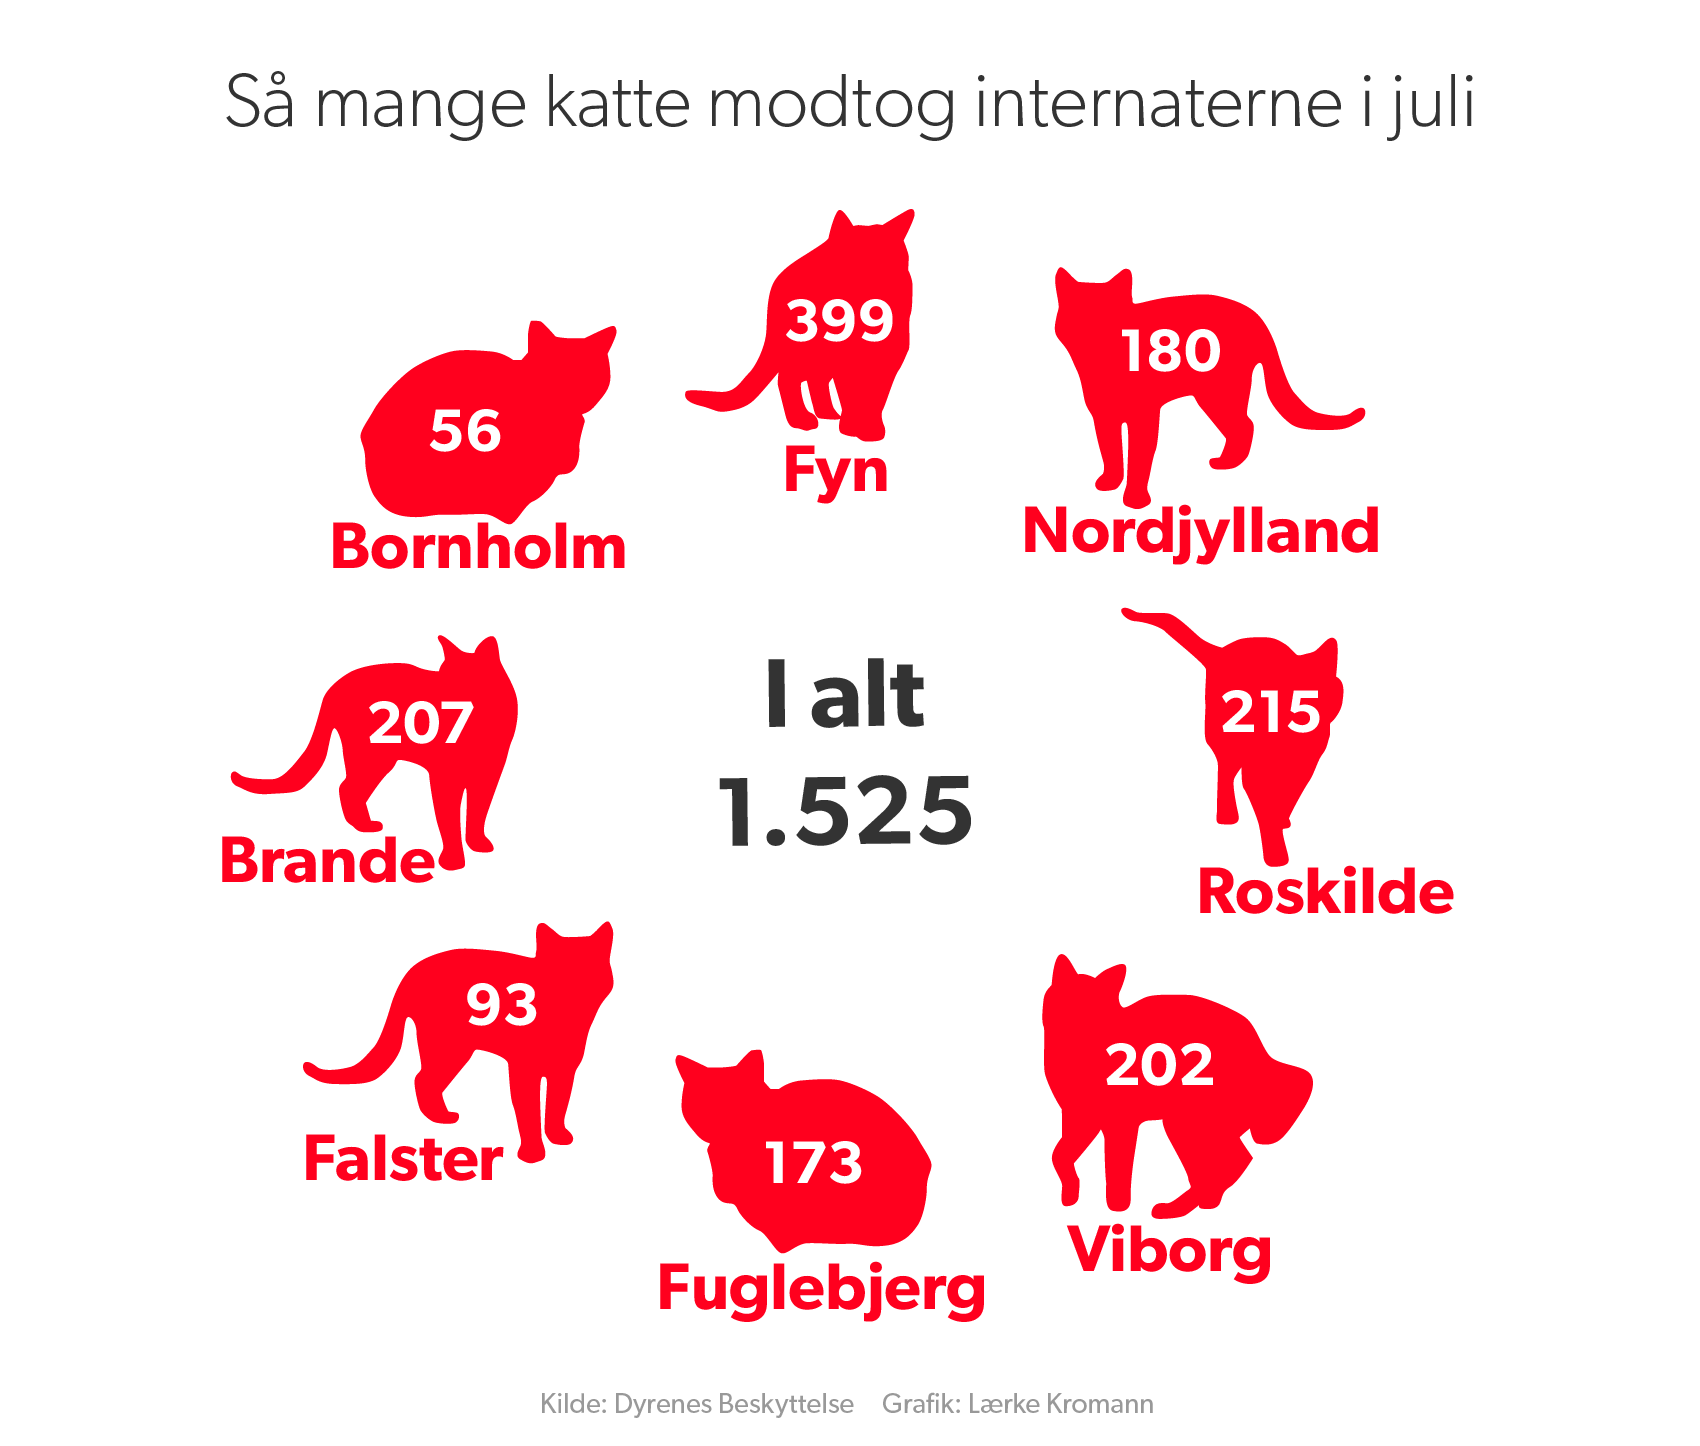 dedikation Synes bælte 450 katte på fire måneder: Internat drukner i kasserede katte | Midt- og  Vestjylland | DR